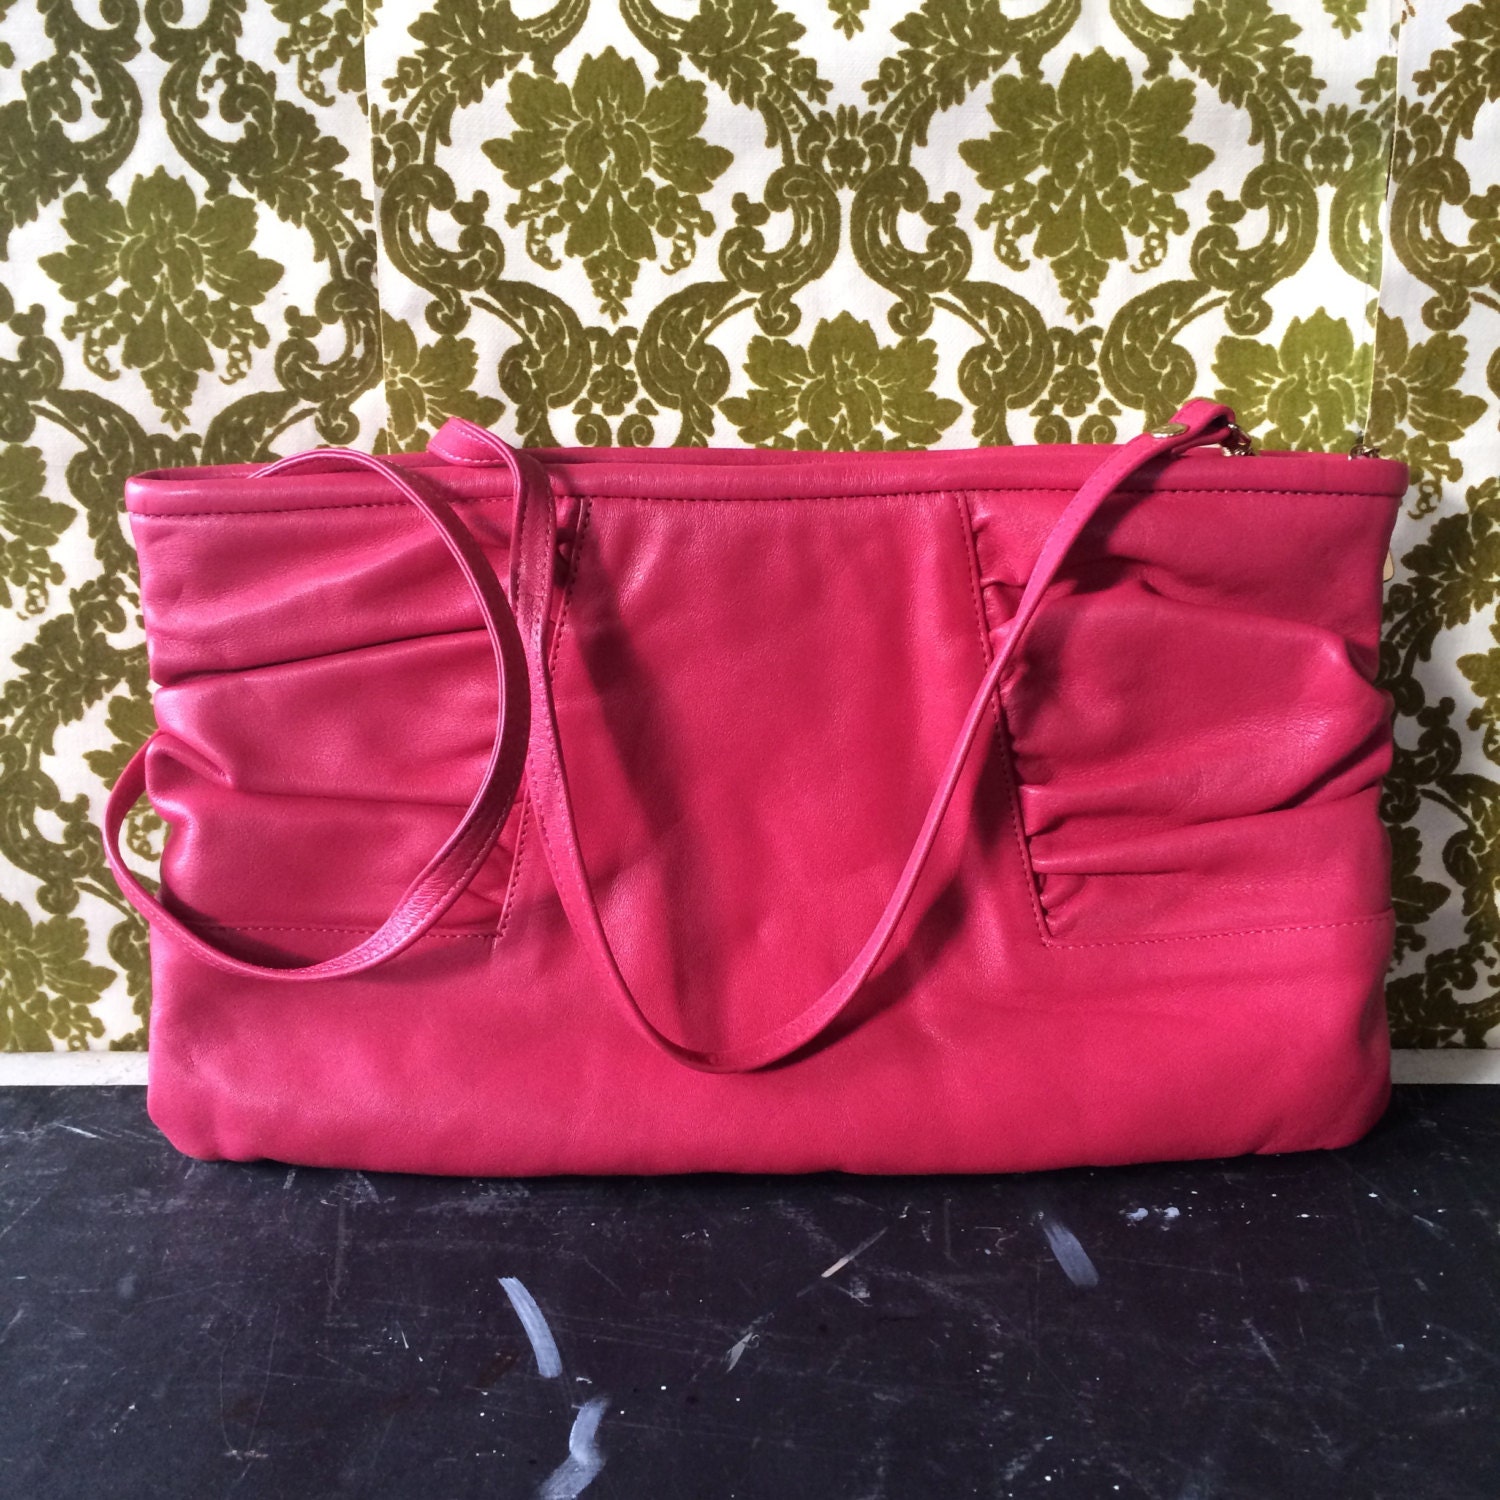 Vintage 80s Hot Pink Crossbody Purse / Leather Handbag by Brio